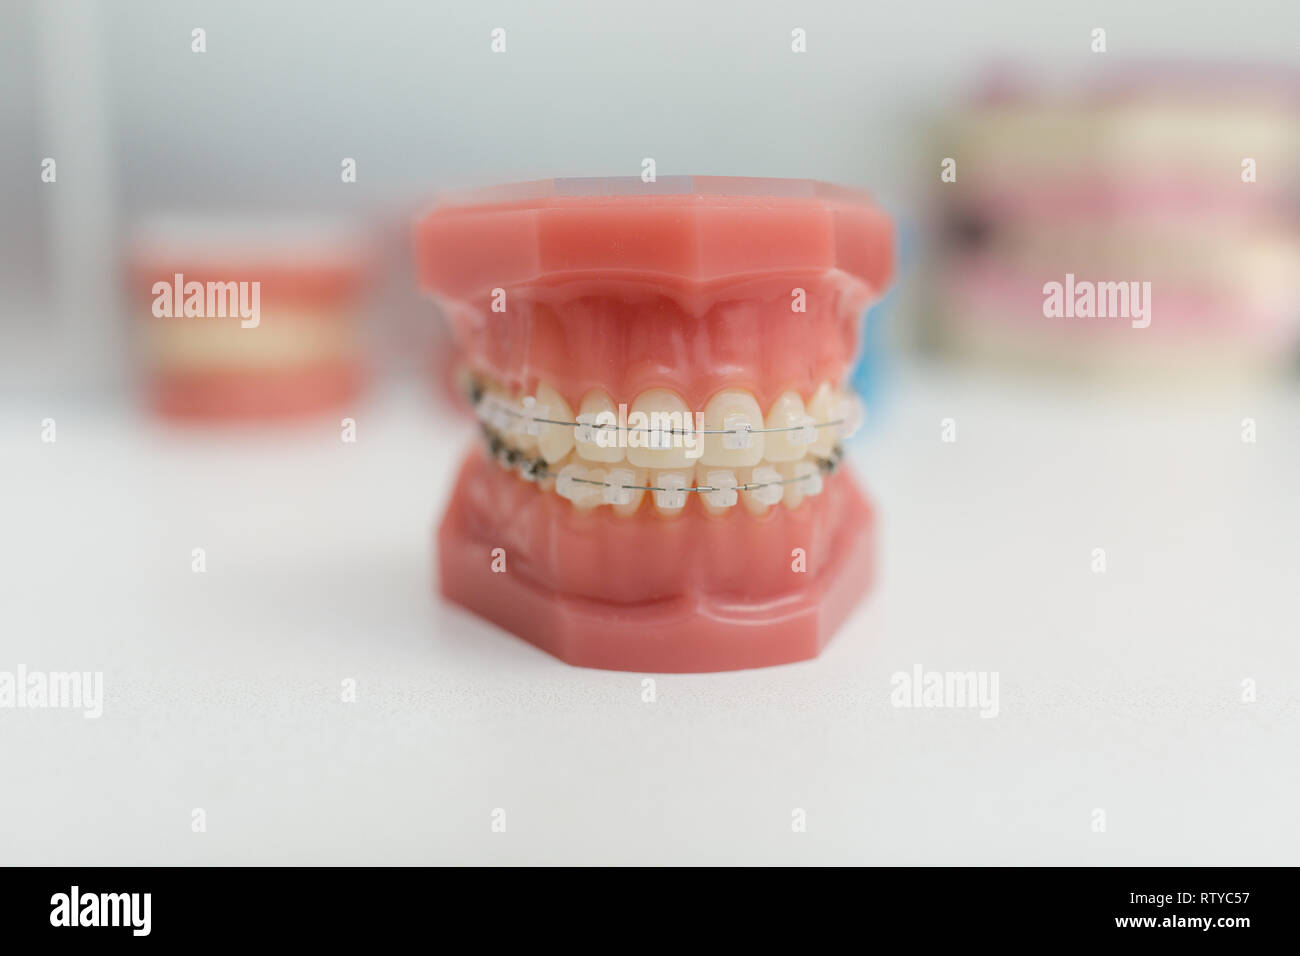 Modello ortodontico - Denti bianchi con bretelle. Mascella umana. Modelli di odontoiatria. Foto Stock